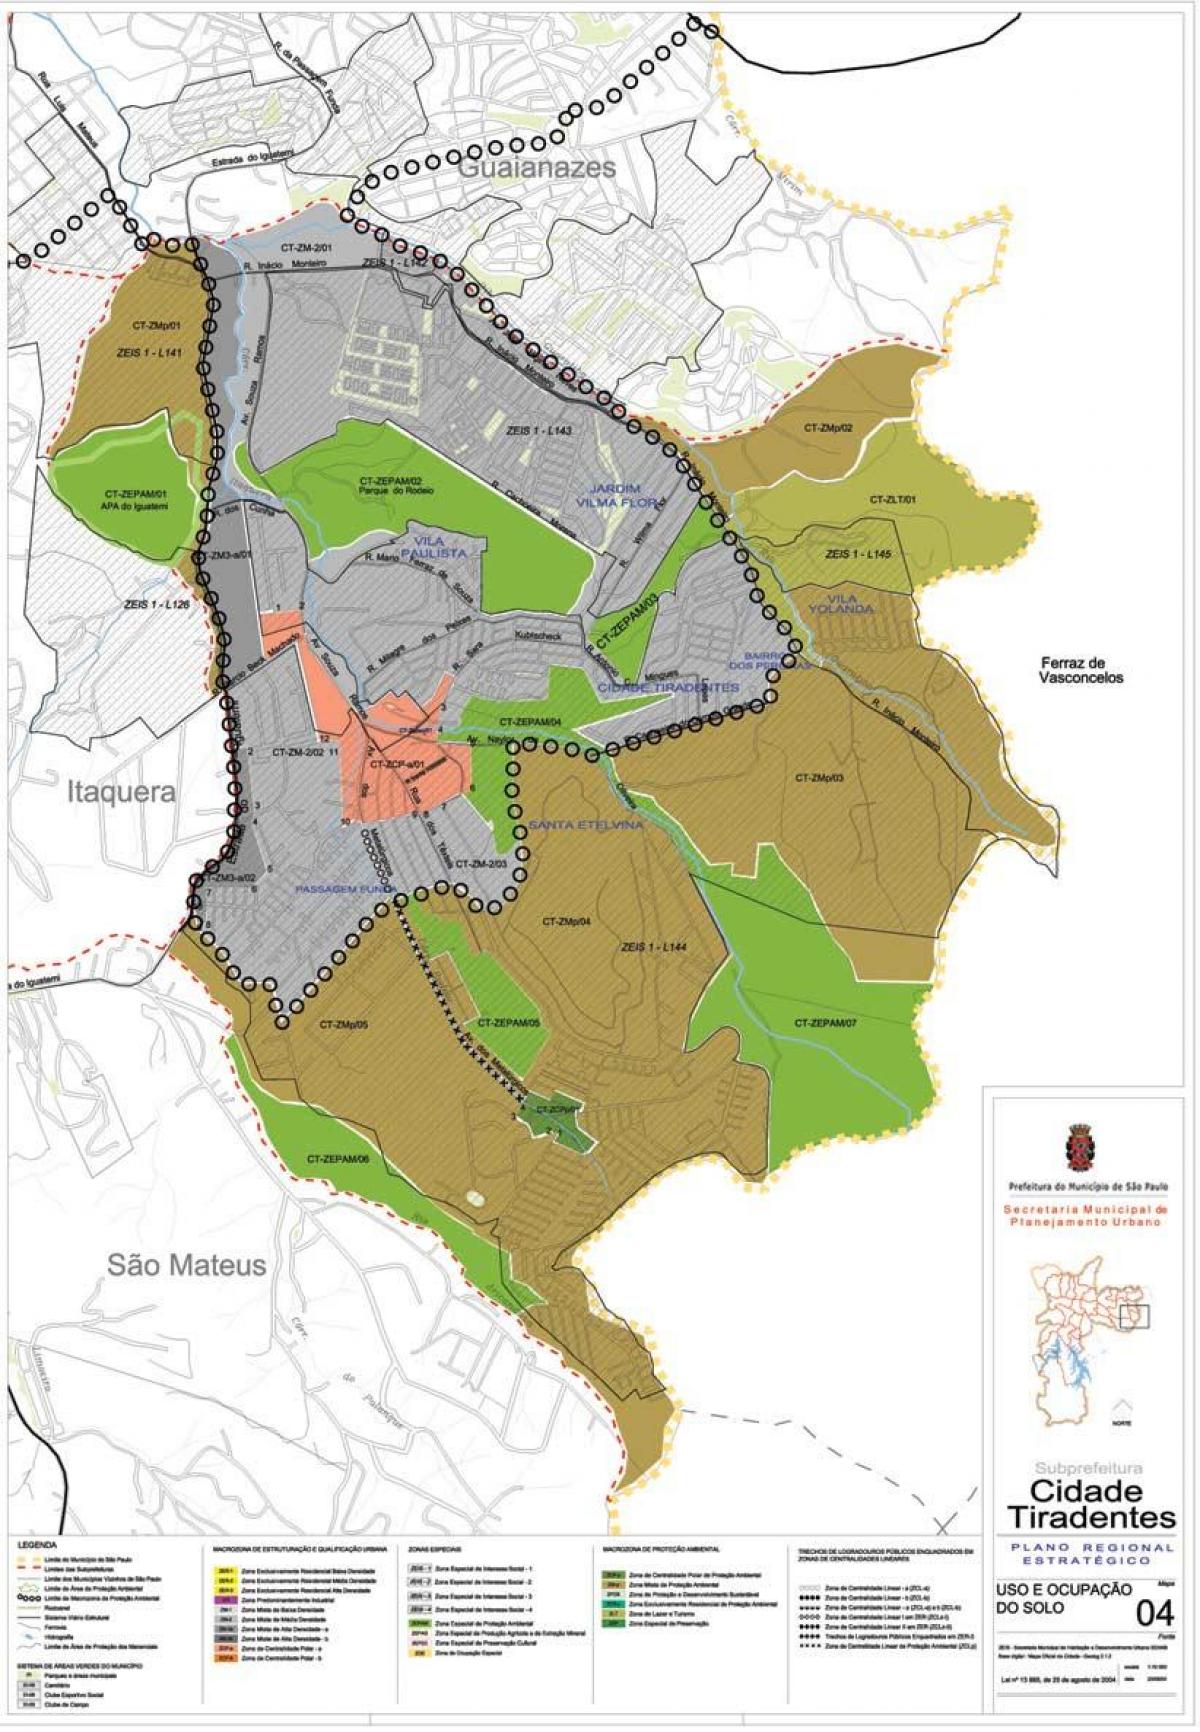 Map of Cidade Tiradentes São Paulo - Occupation of the soil